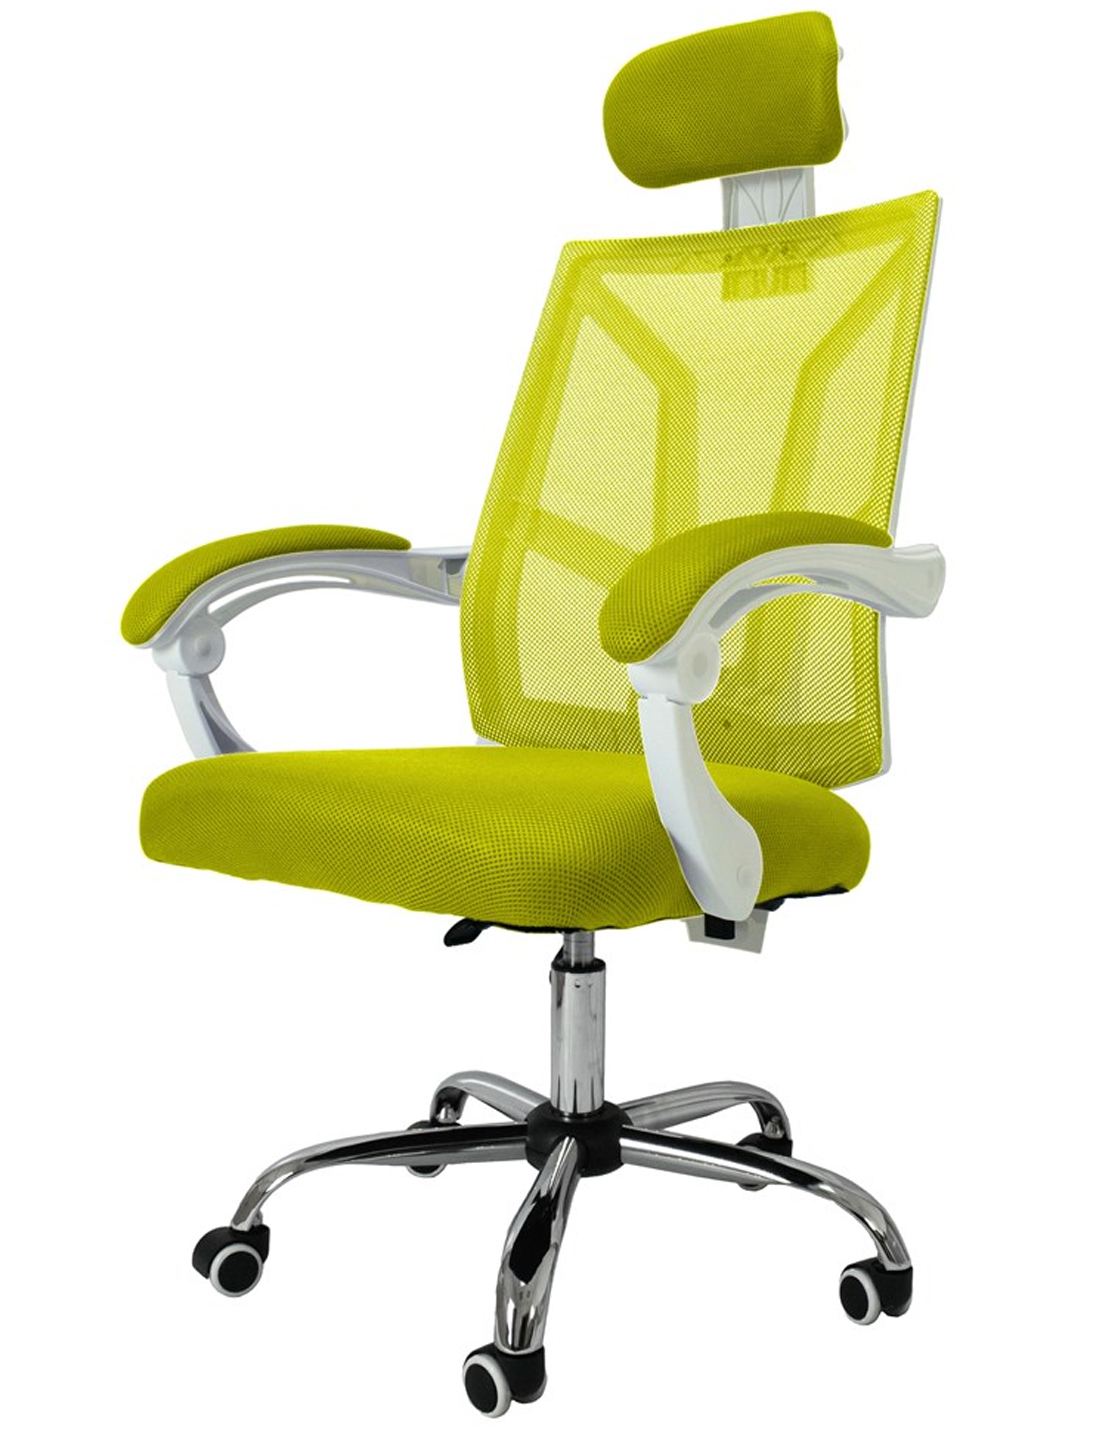 Kancelářská židle SCORPIO zelená